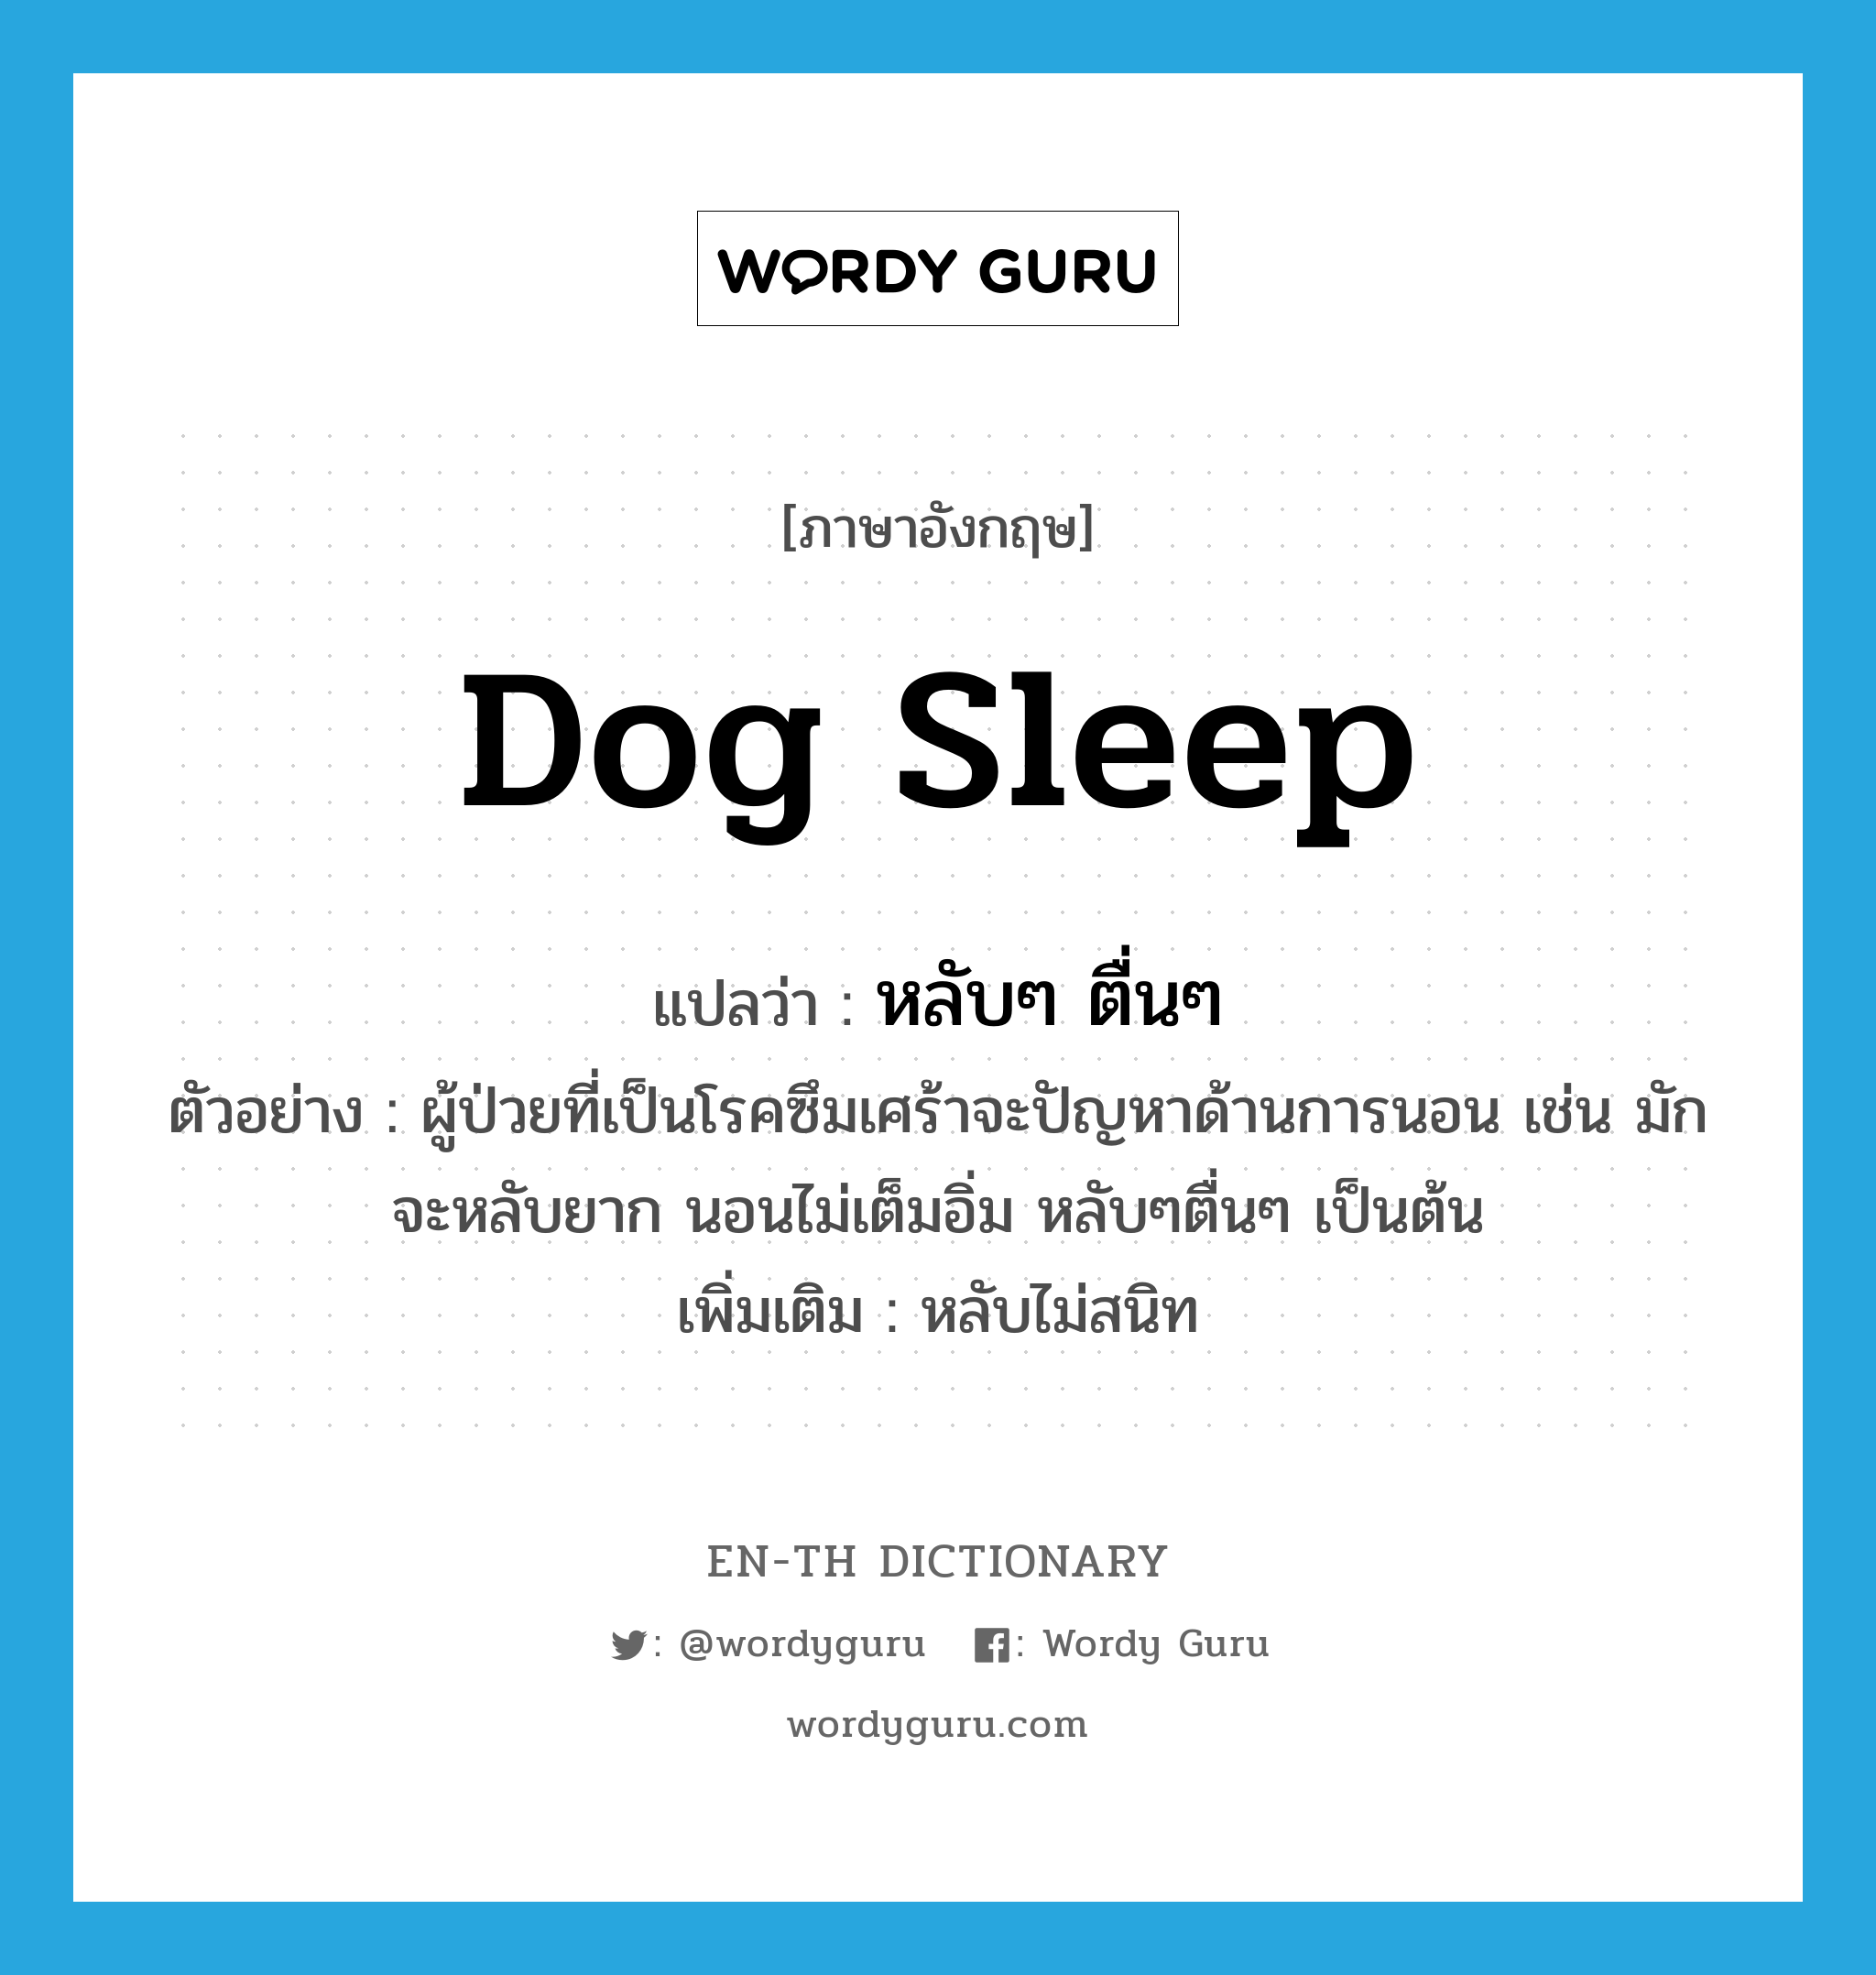 หลับๆ ตื่นๆ ภาษาอังกฤษ?, คำศัพท์ภาษาอังกฤษ หลับๆ ตื่นๆ แปลว่า dog sleep ประเภท ADV ตัวอย่าง ผู้ป่วยที่เป็นโรคซึมเศร้าจะปัญหาด้านการนอน เช่น มักจะหลับยาก นอนไม่เต็มอิ่ม หลับๆตื่นๆ เป็นต้น เพิ่มเติม หลับไม่สนิท หมวด ADV